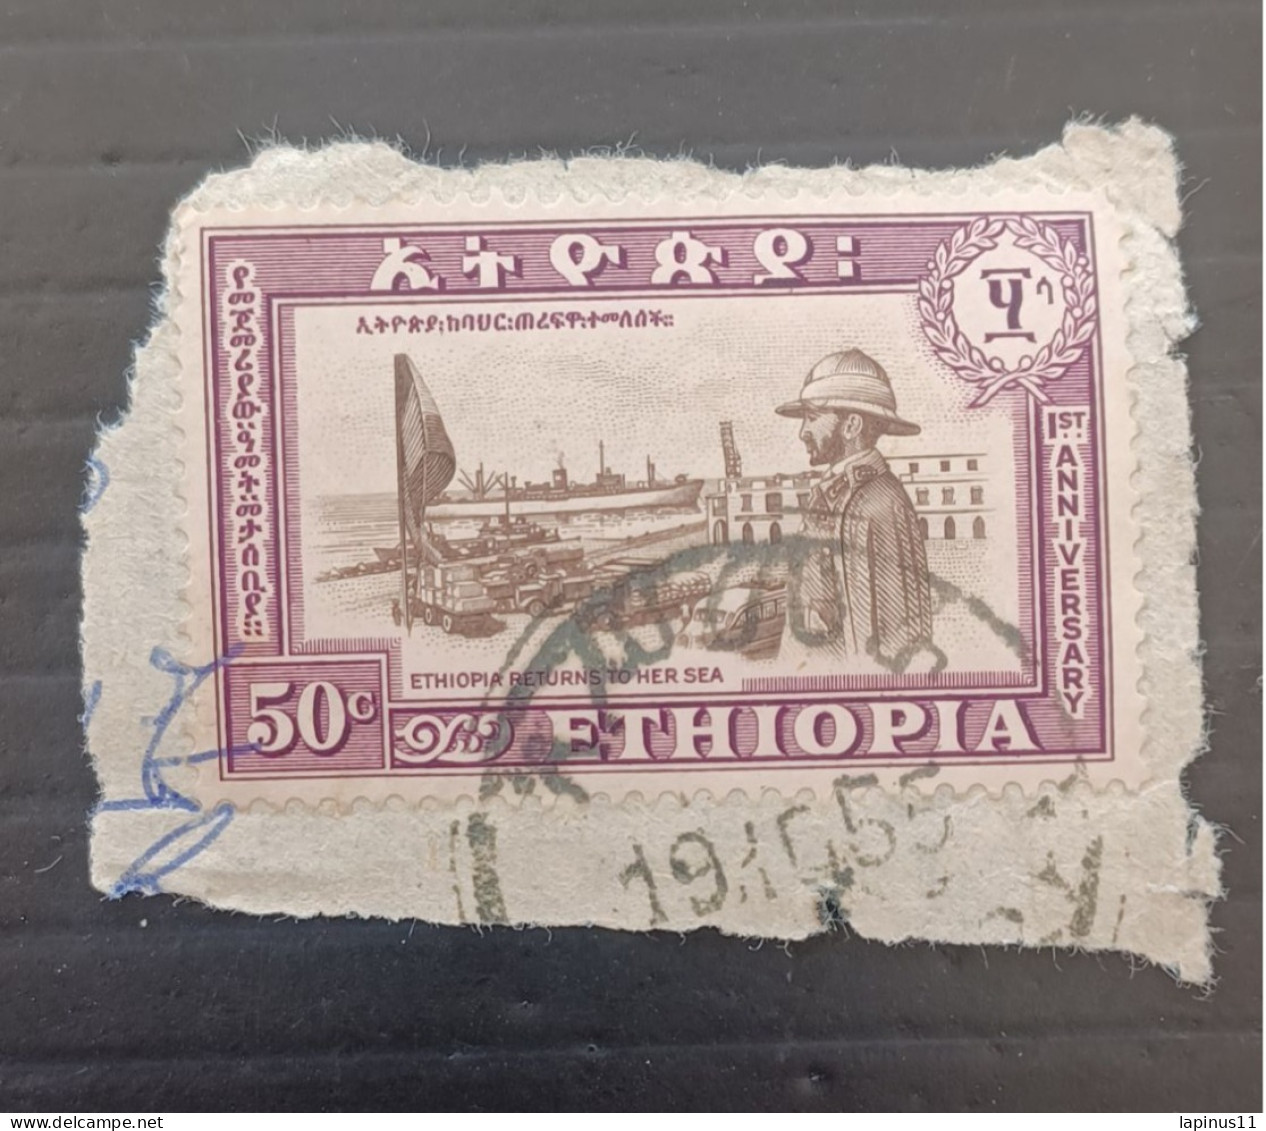 ETIOPIA 1953 ANNIVERSAIRE DU RETOUR DE L ERITREA -PORT DE L ERITREAET LE NEGUS YVERT N 325 - Äthiopien